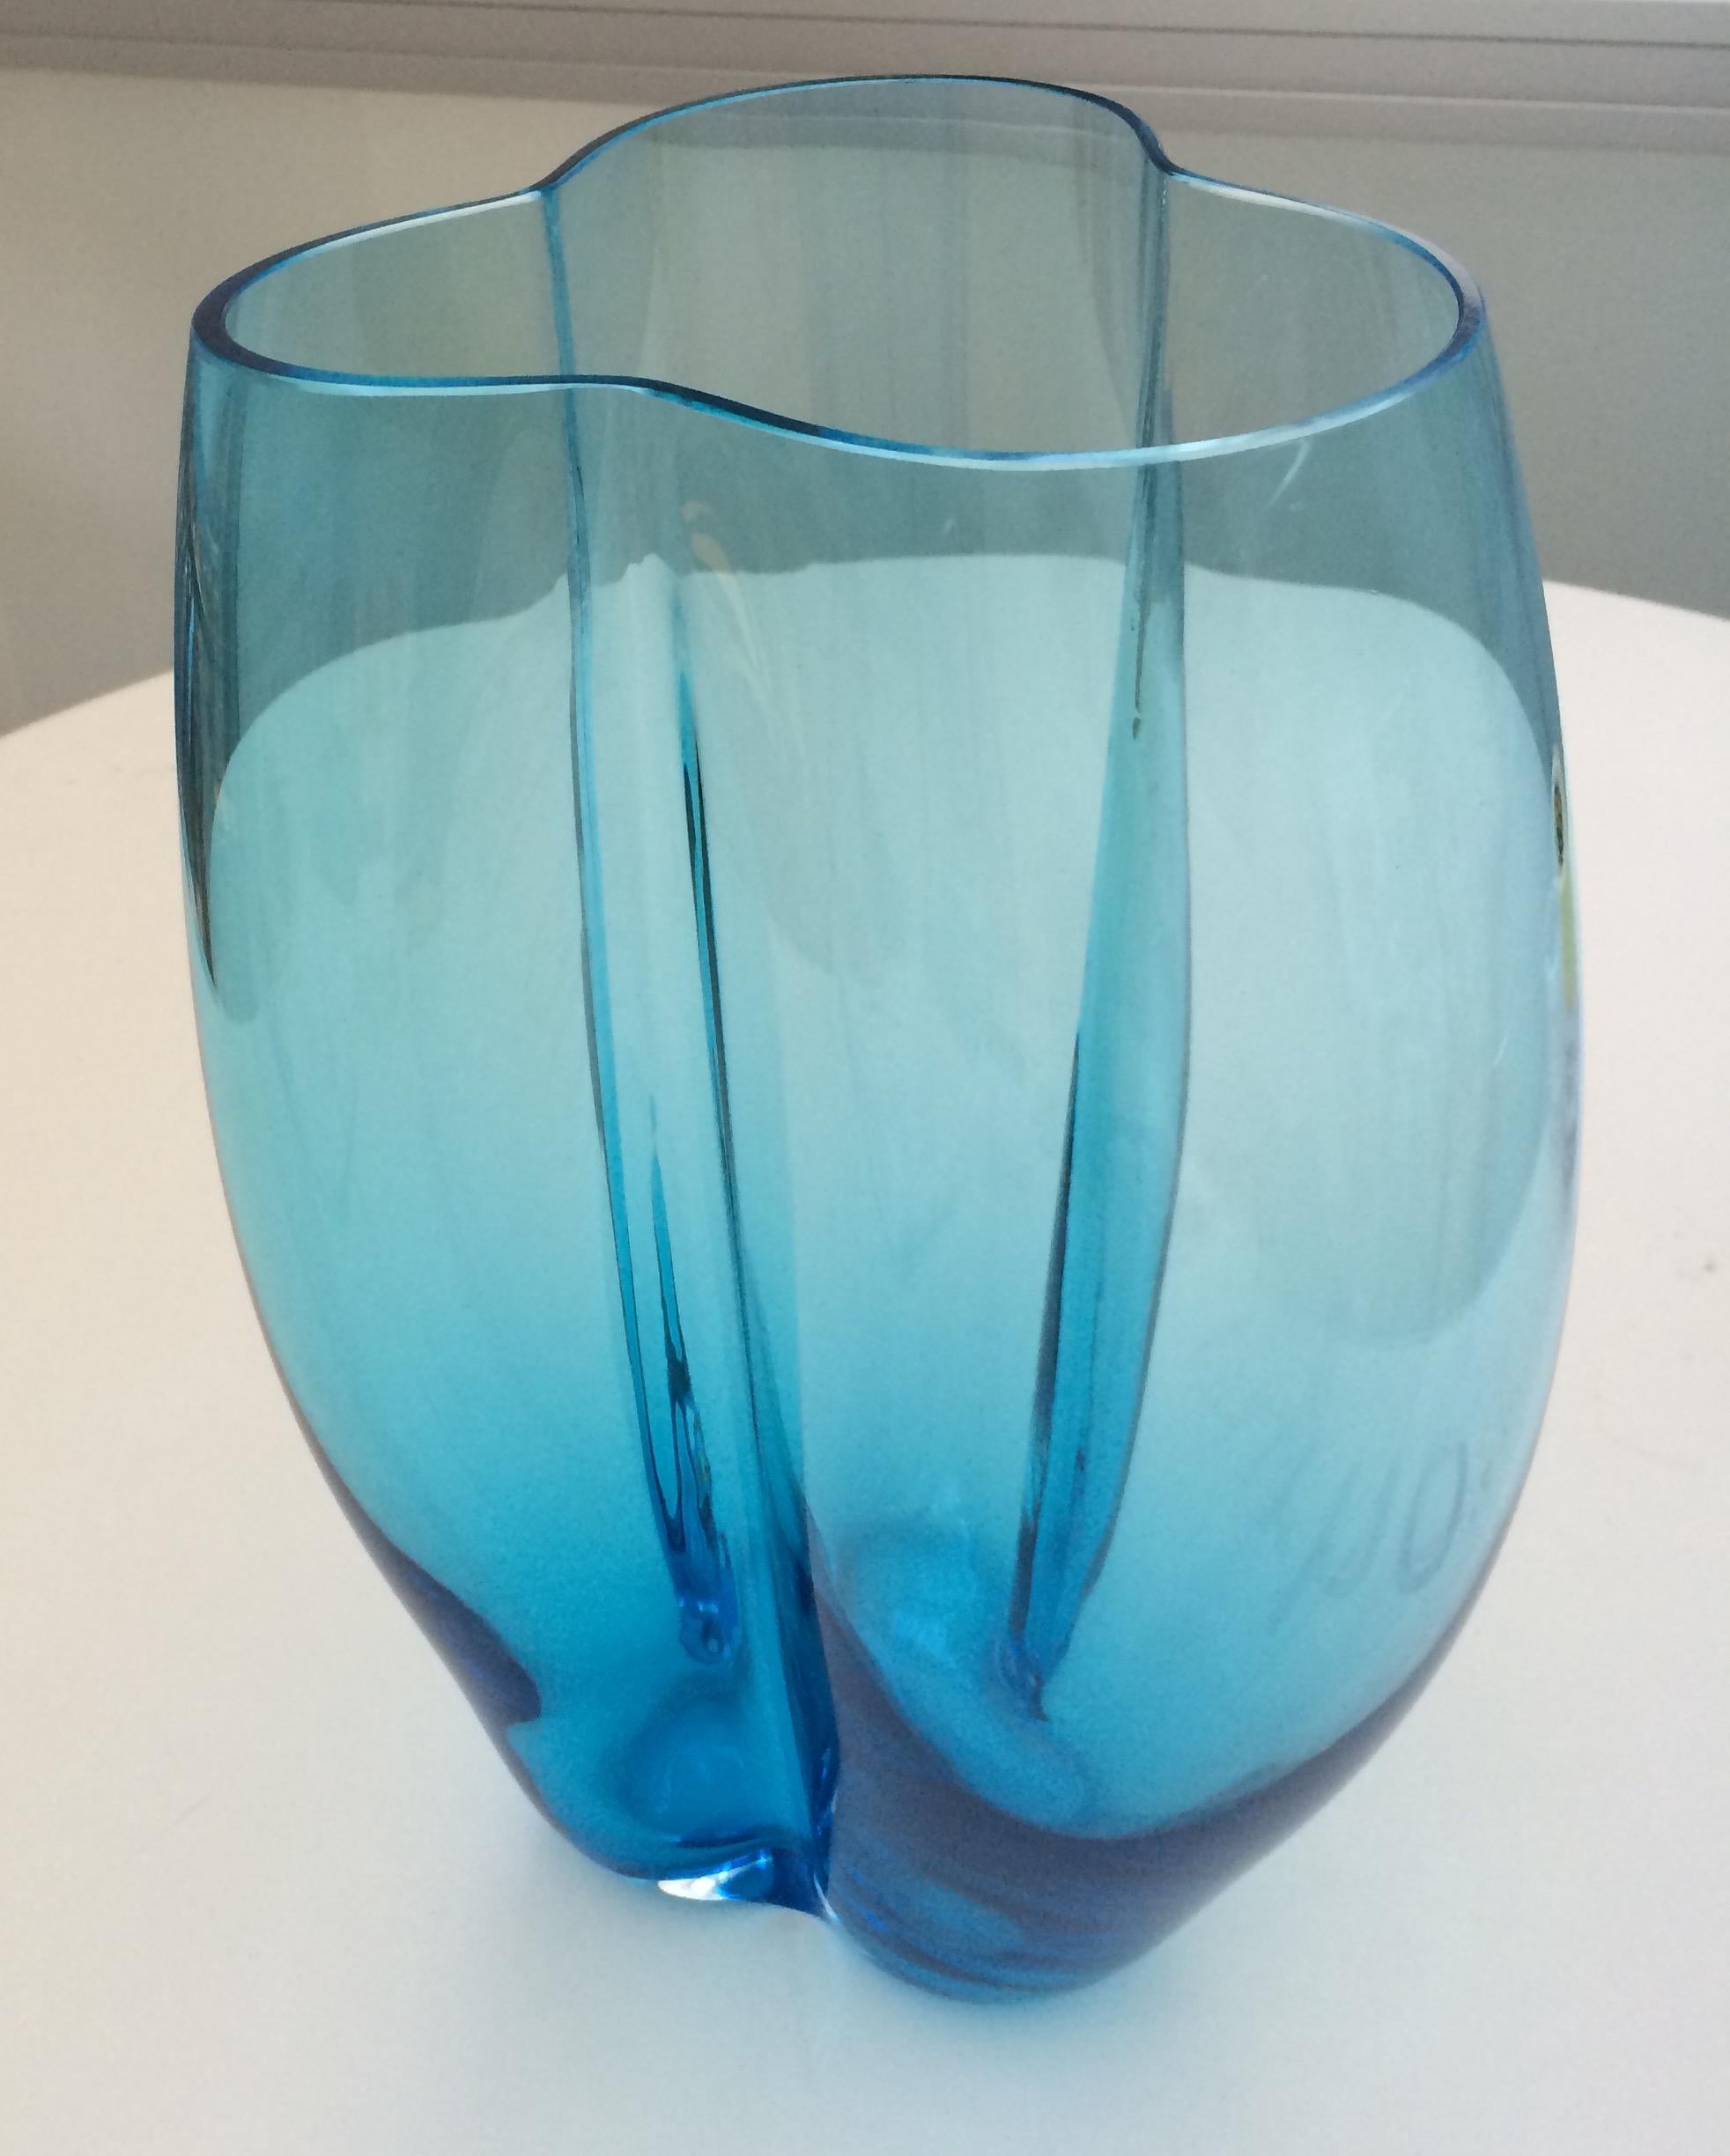 21. Jahrhundert Alessandro Mendini, Petalo große Vase 3 Blütenblätter, Muranoglas, verschiedene Farben
Petal ist eine runde Vase, die dank feiner Metalldrähte beim Blasen eine gelappte Form erhält, die an Blütenblätter erinnert. Petalo wurde von